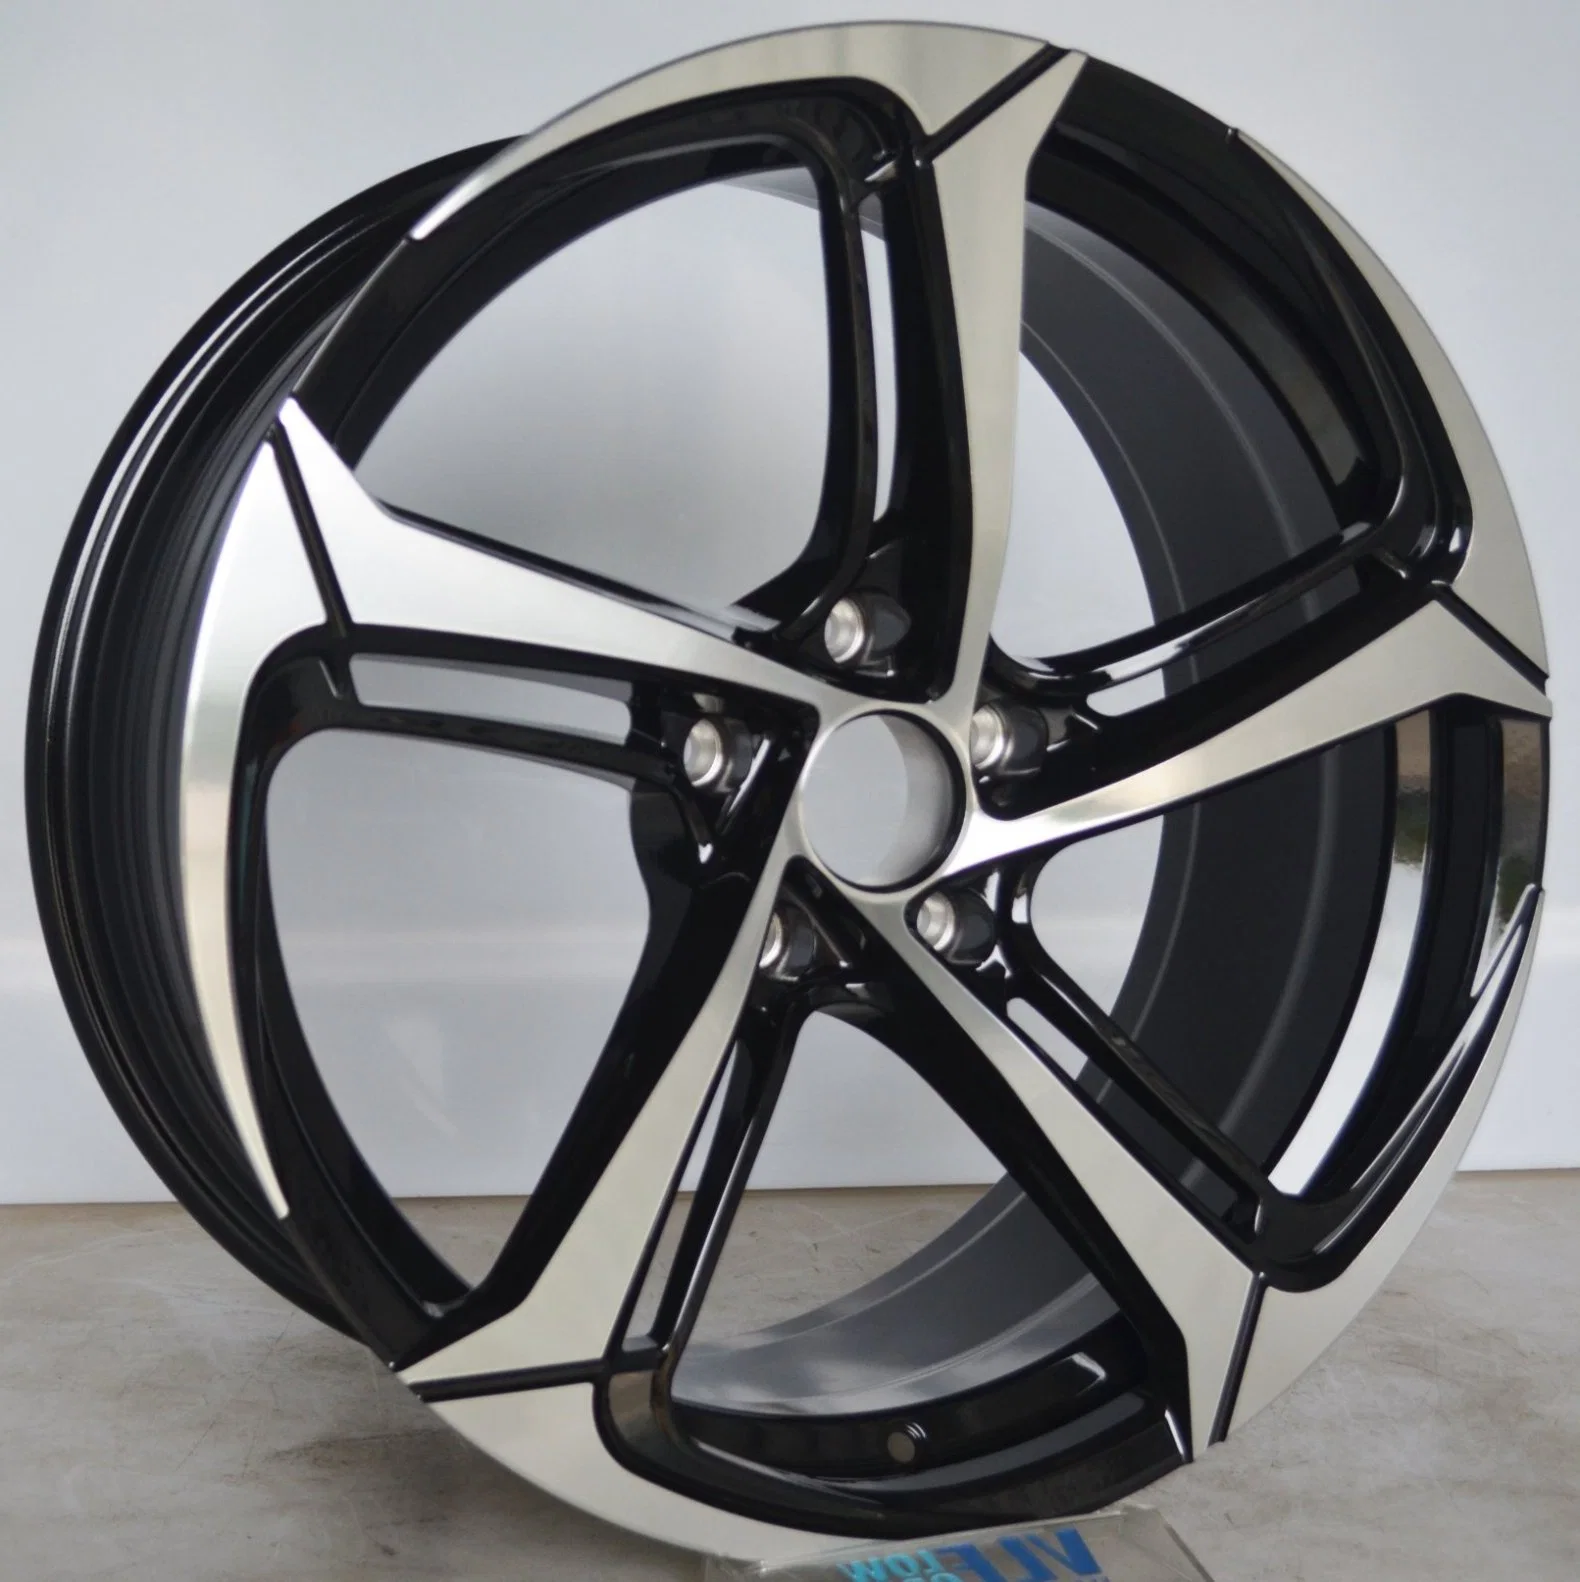 Réplica de fundição 20polegadas rodas de aço cromado preto para carro